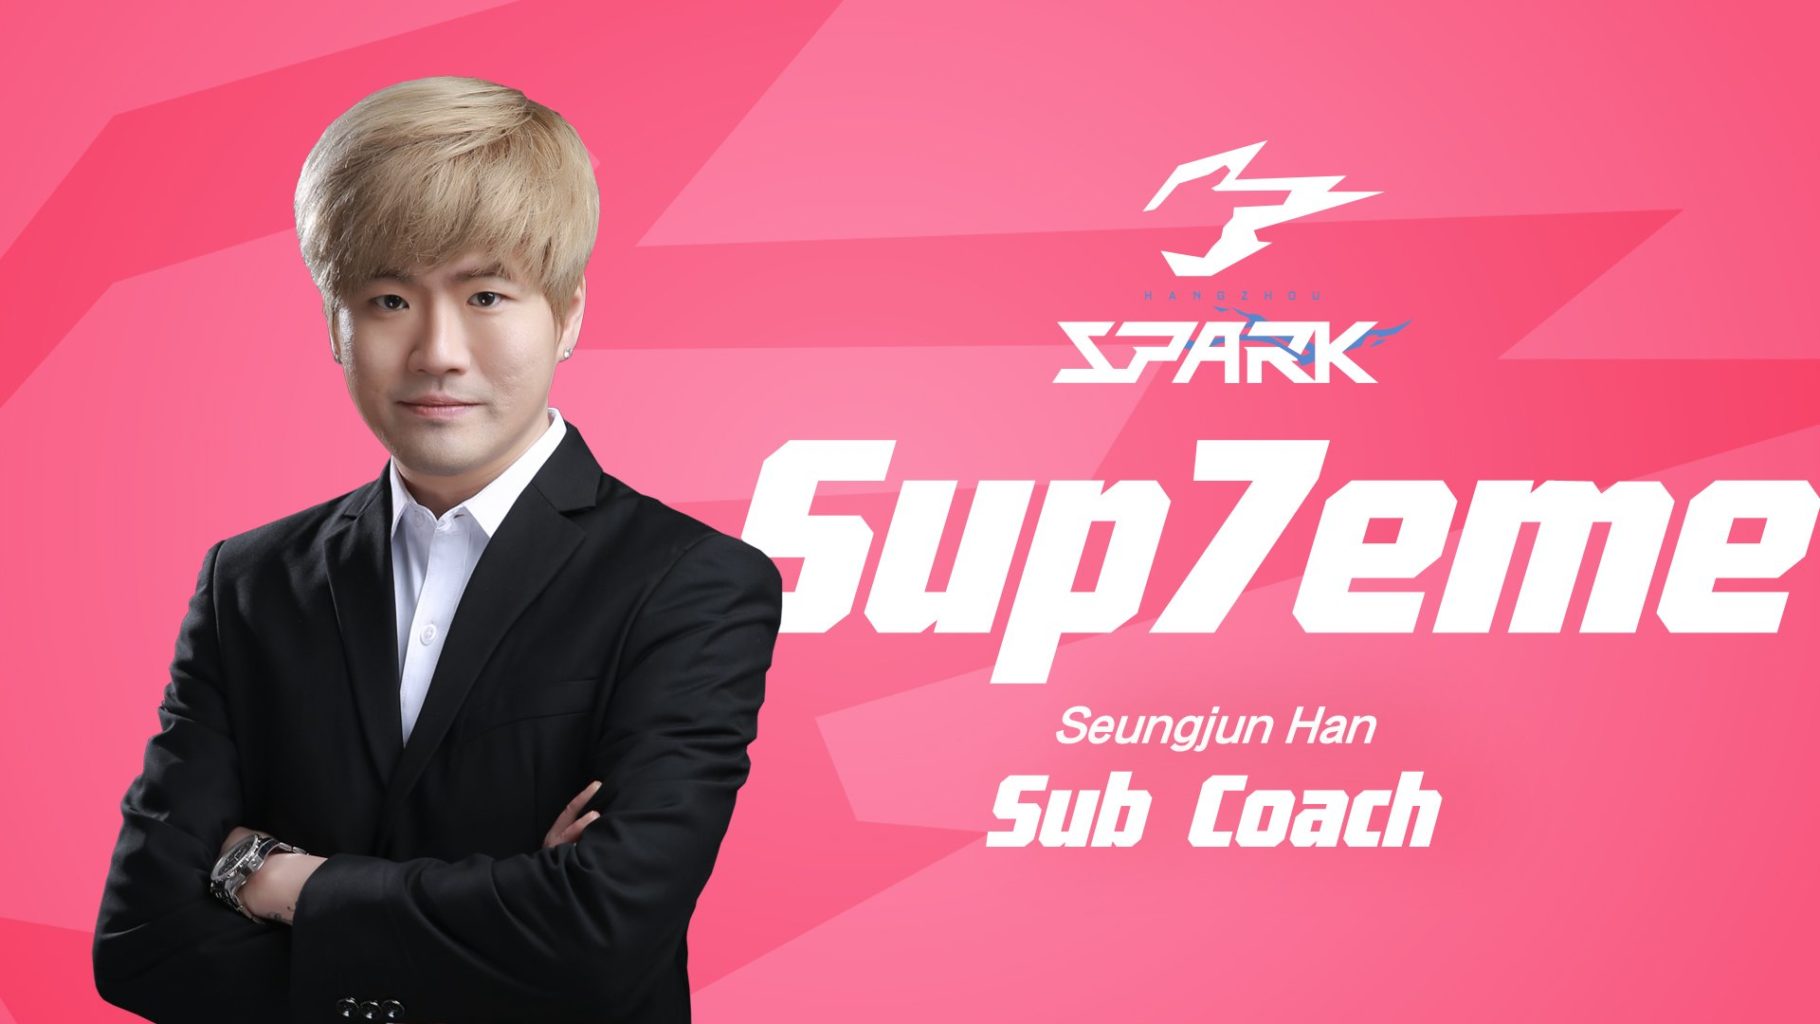 Spark Coach